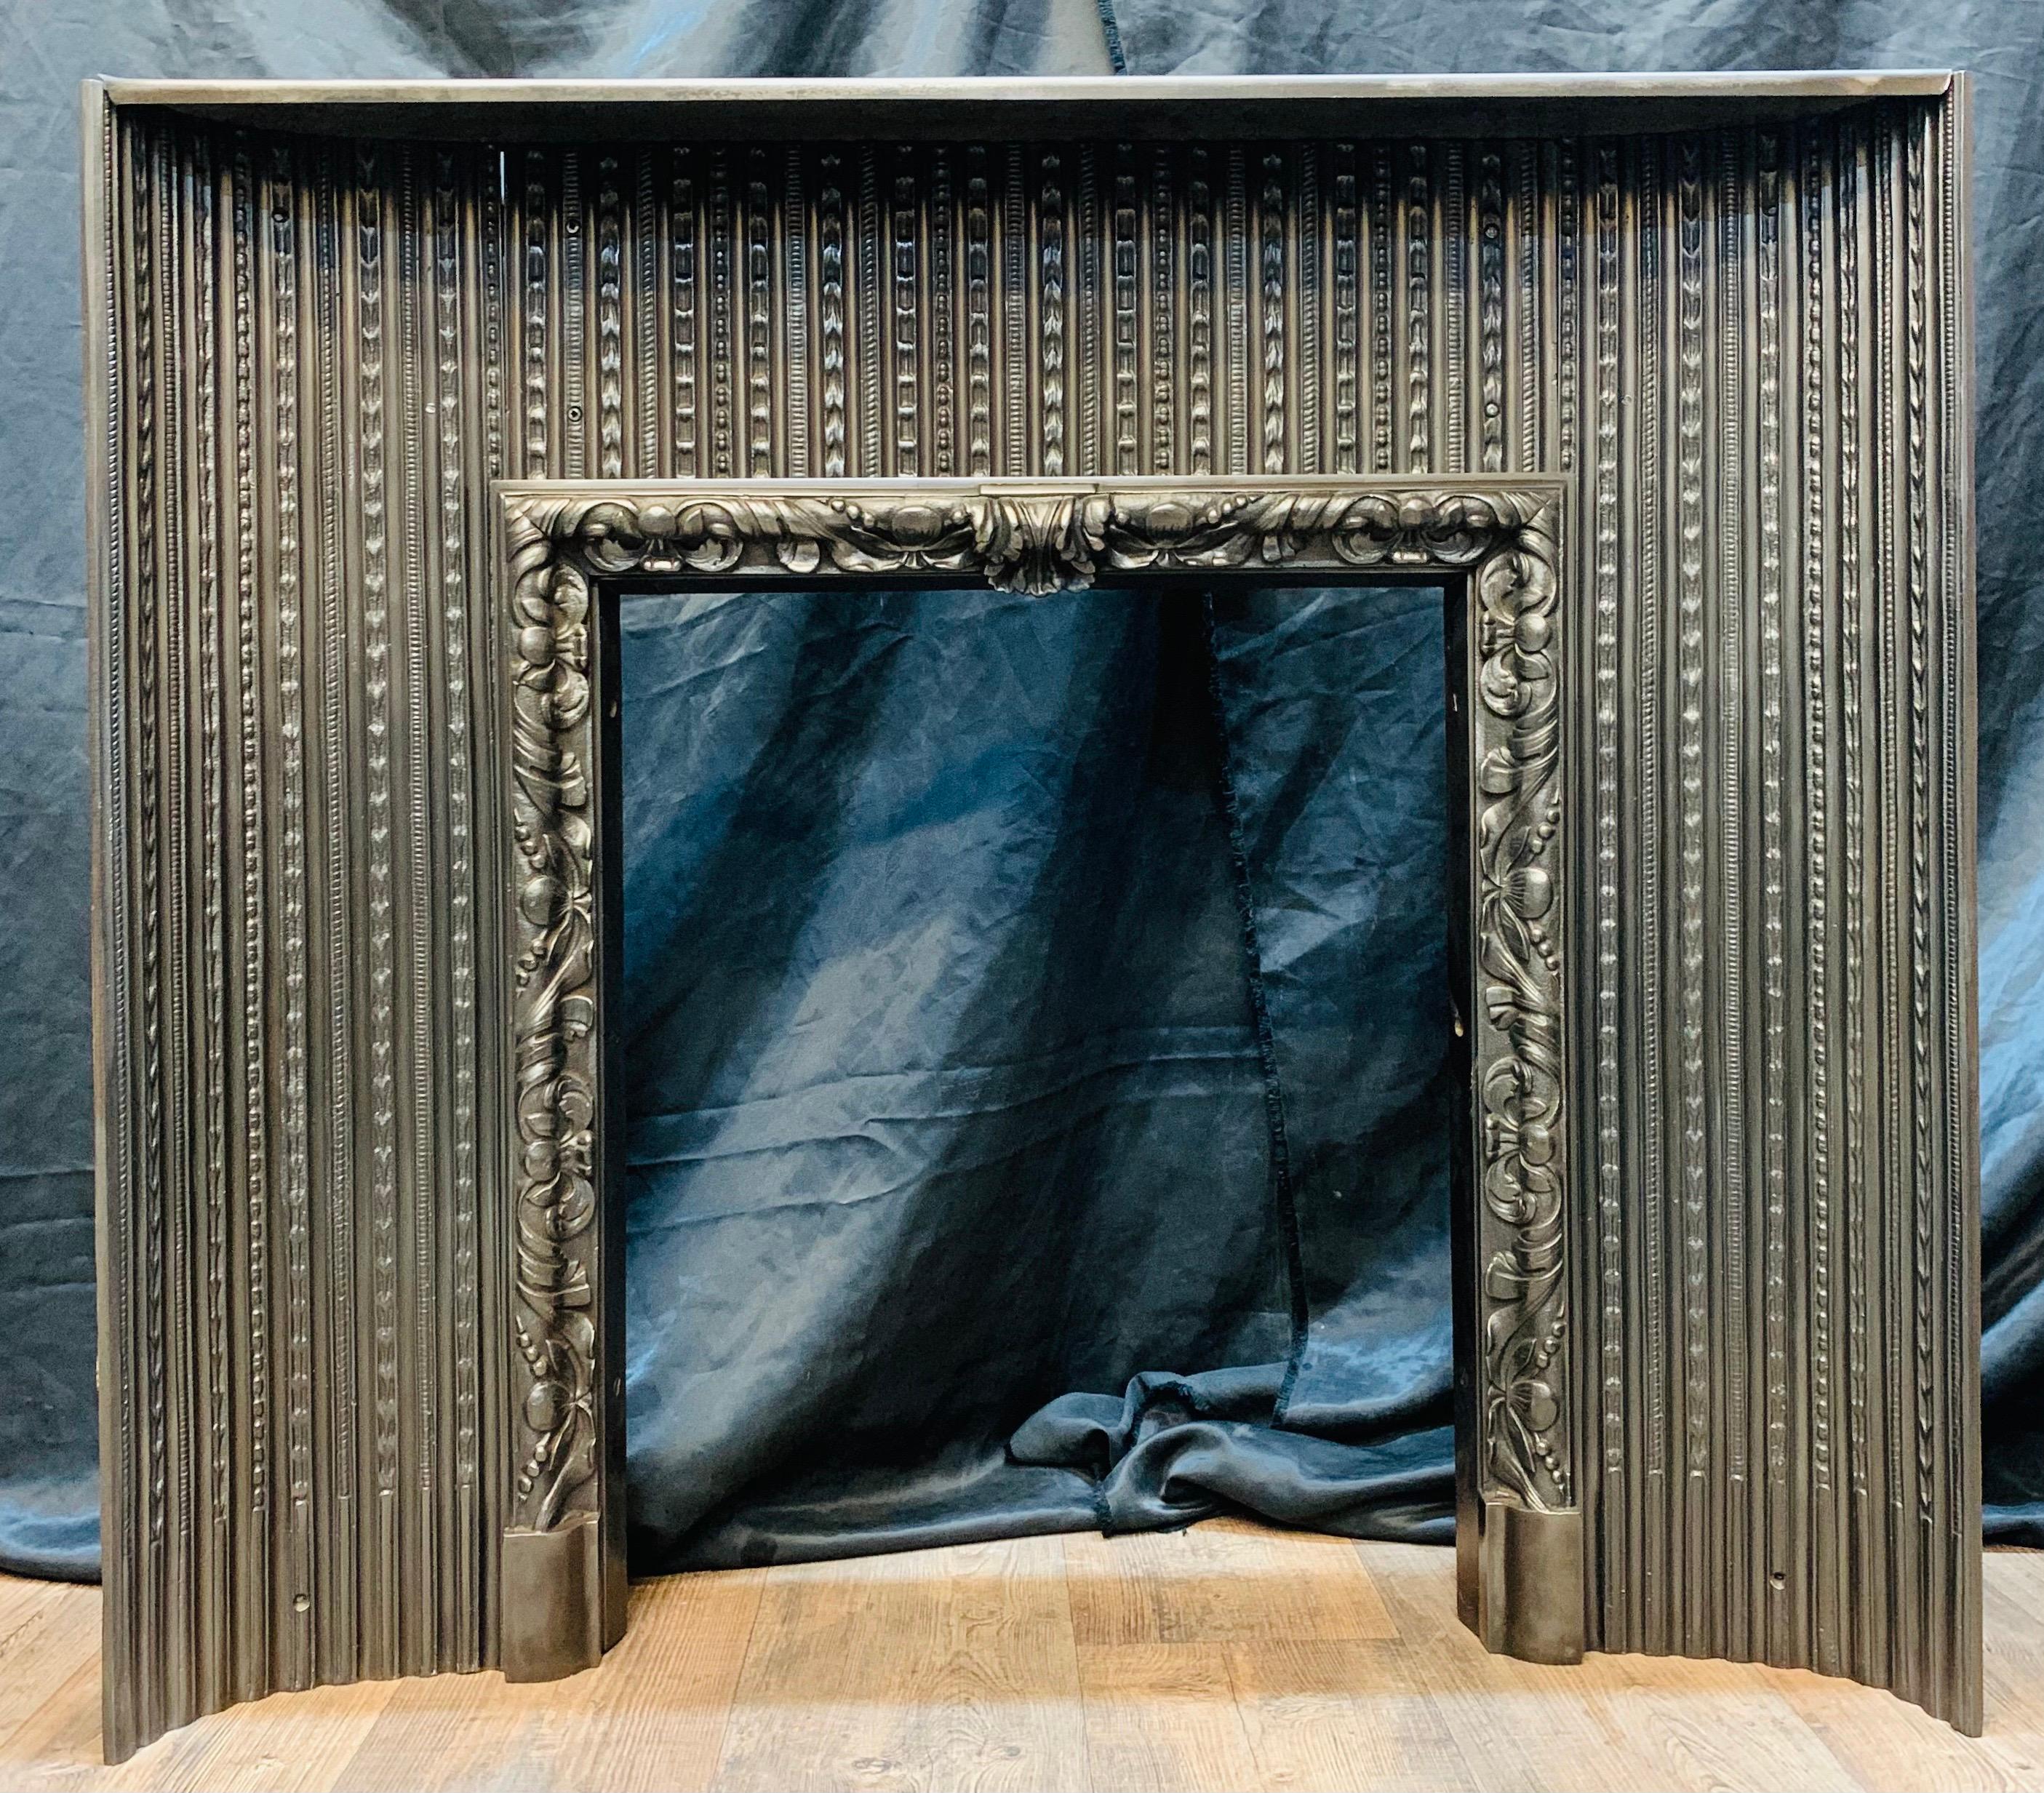 Un insert de cheminée en fonte de style Régence du début du 19e siècle, d'excellente qualité. Les panneaux intérieurs convexes à nervures sont reliés à un cadre central à feuilles d'acanthe reposant sur des blocs de pied. Polissage au graphite pour